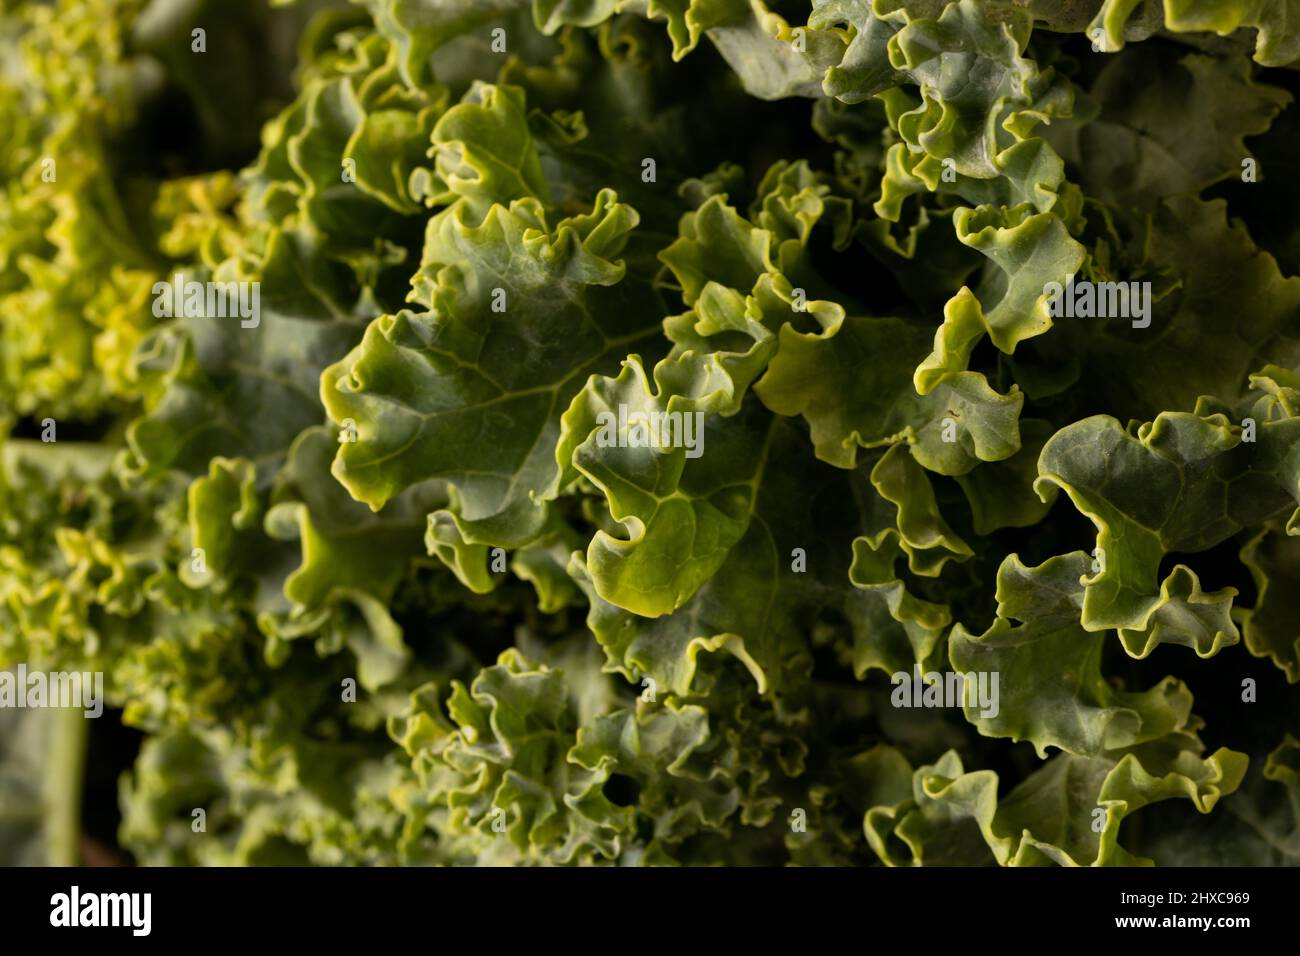 Full frame shot of fresh green kale Stock Photo